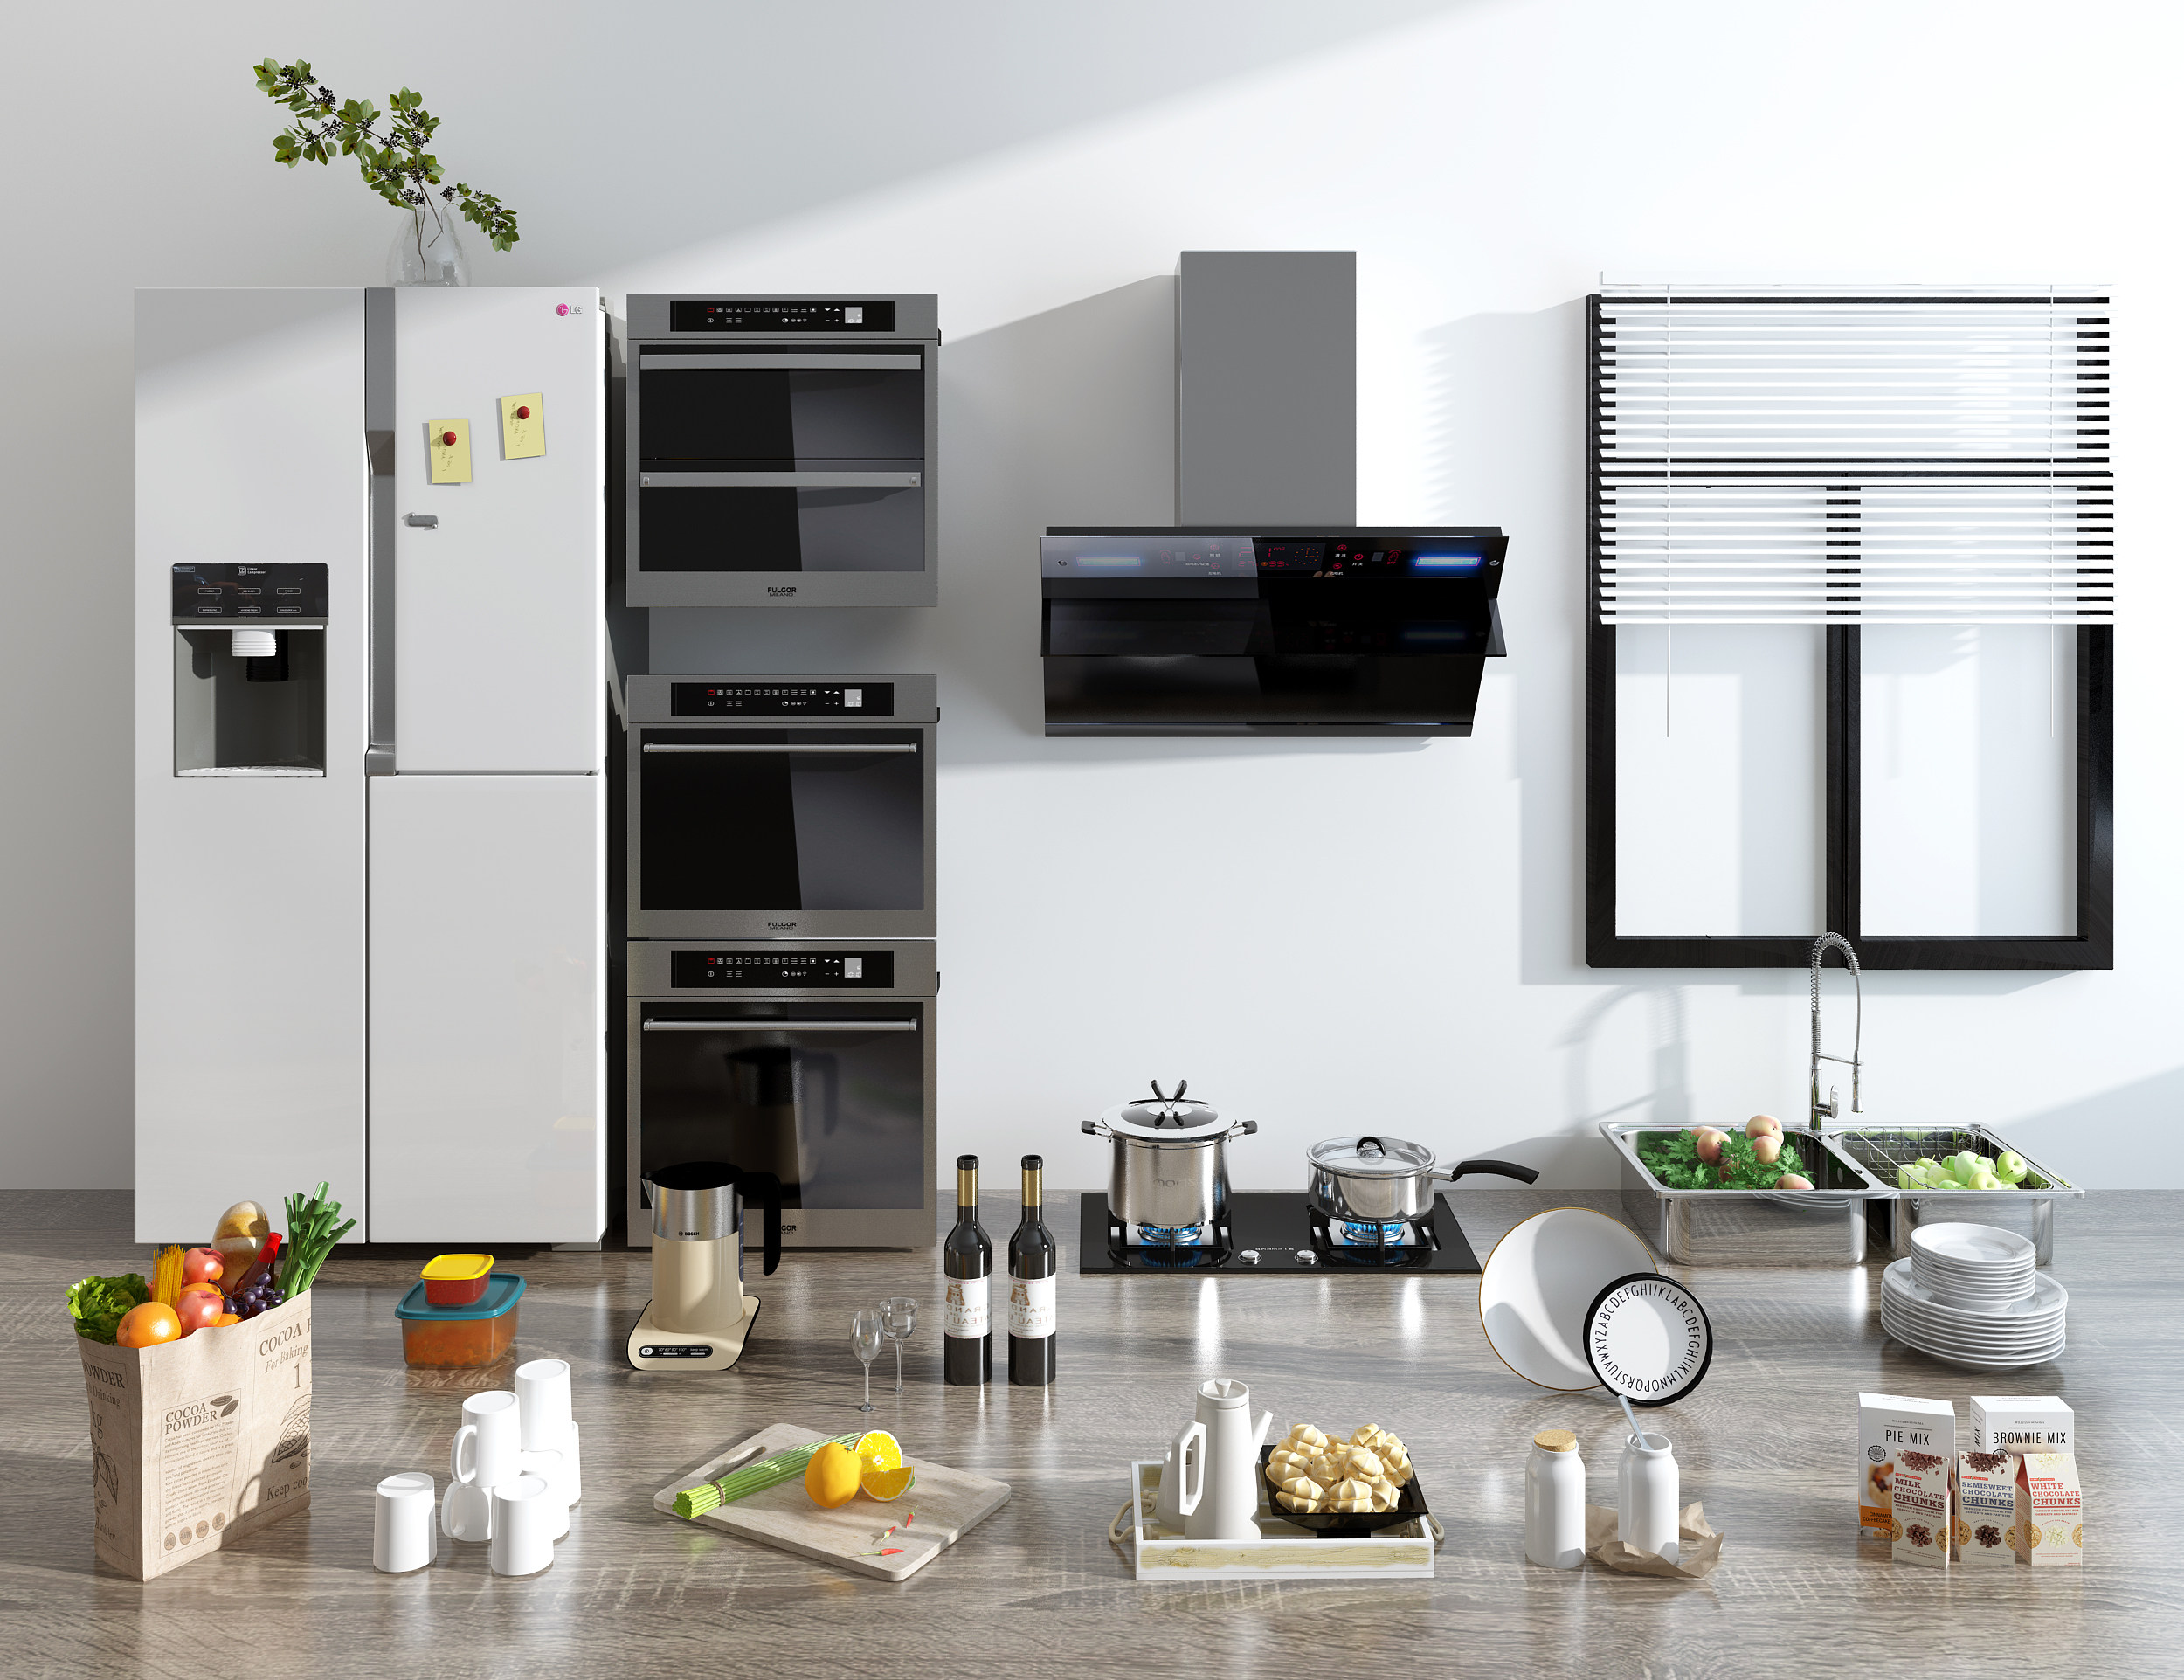 现代厨房器具_食物_家用电器_3d模型下载